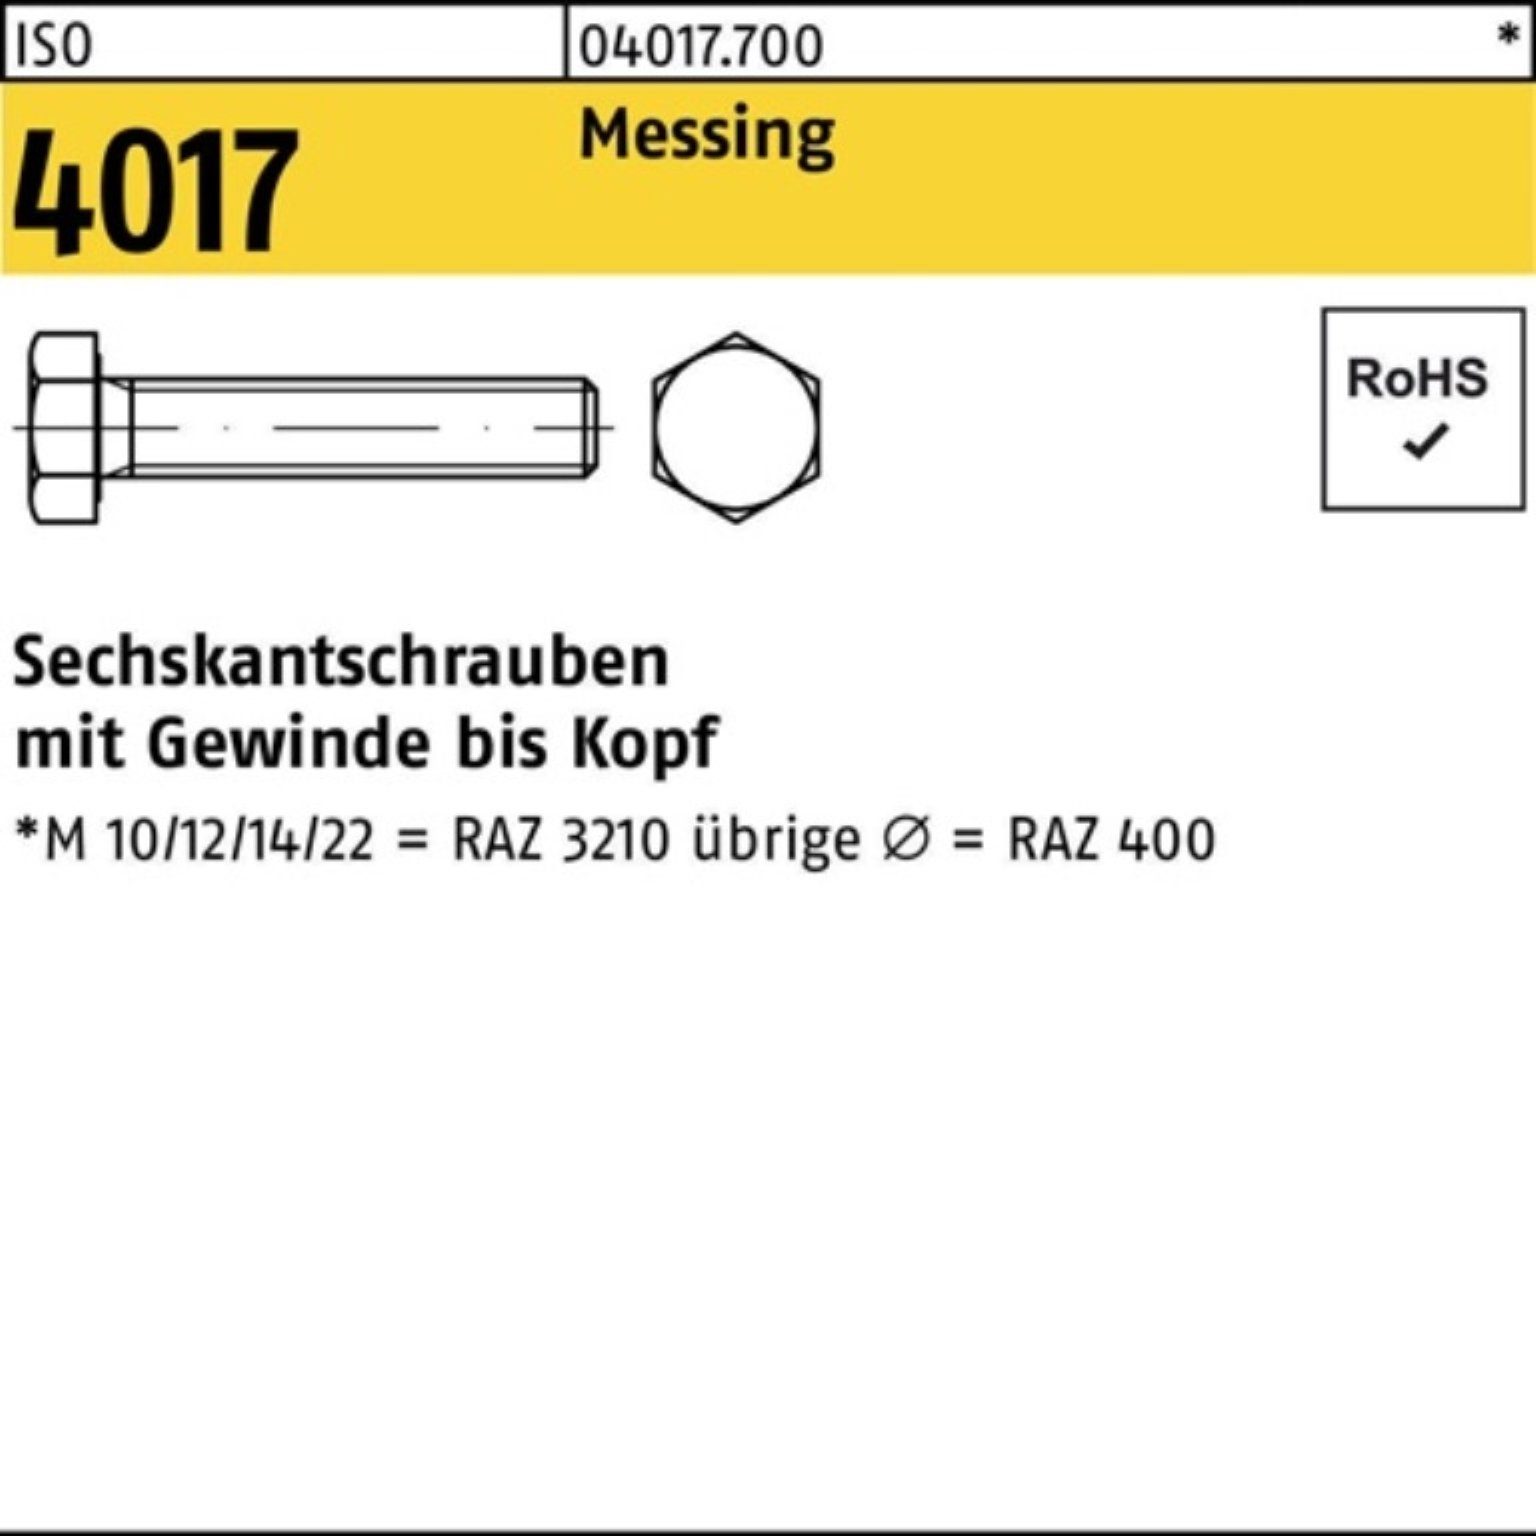 Sechskantschraube VG Bufab Pack Stück IS M10x 16 100er Messing Sechskantschraube 4017 ISO 100